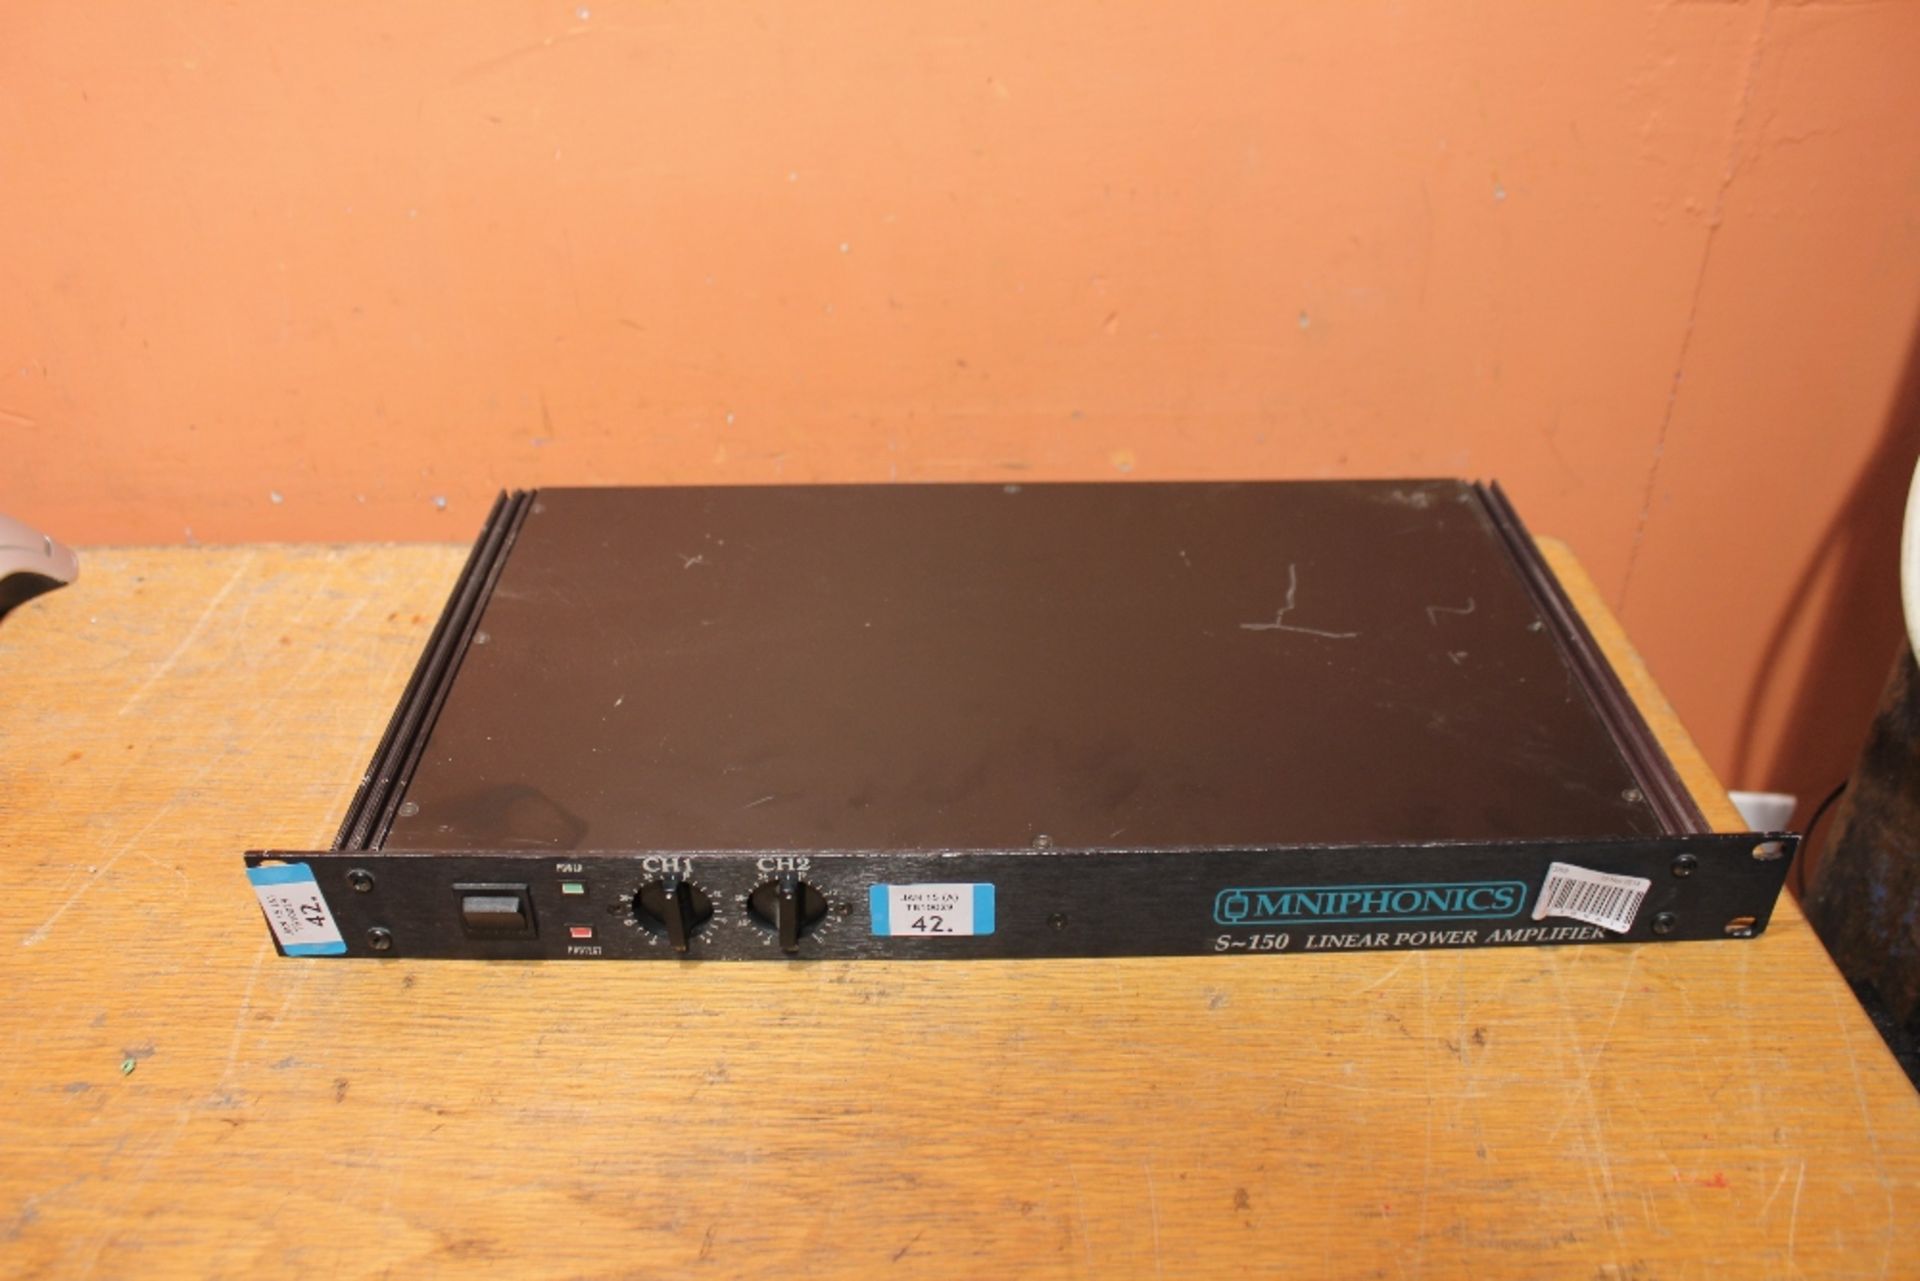 MNIPHONICS S~150 Linear Power Amplifier - 1U Rackmount